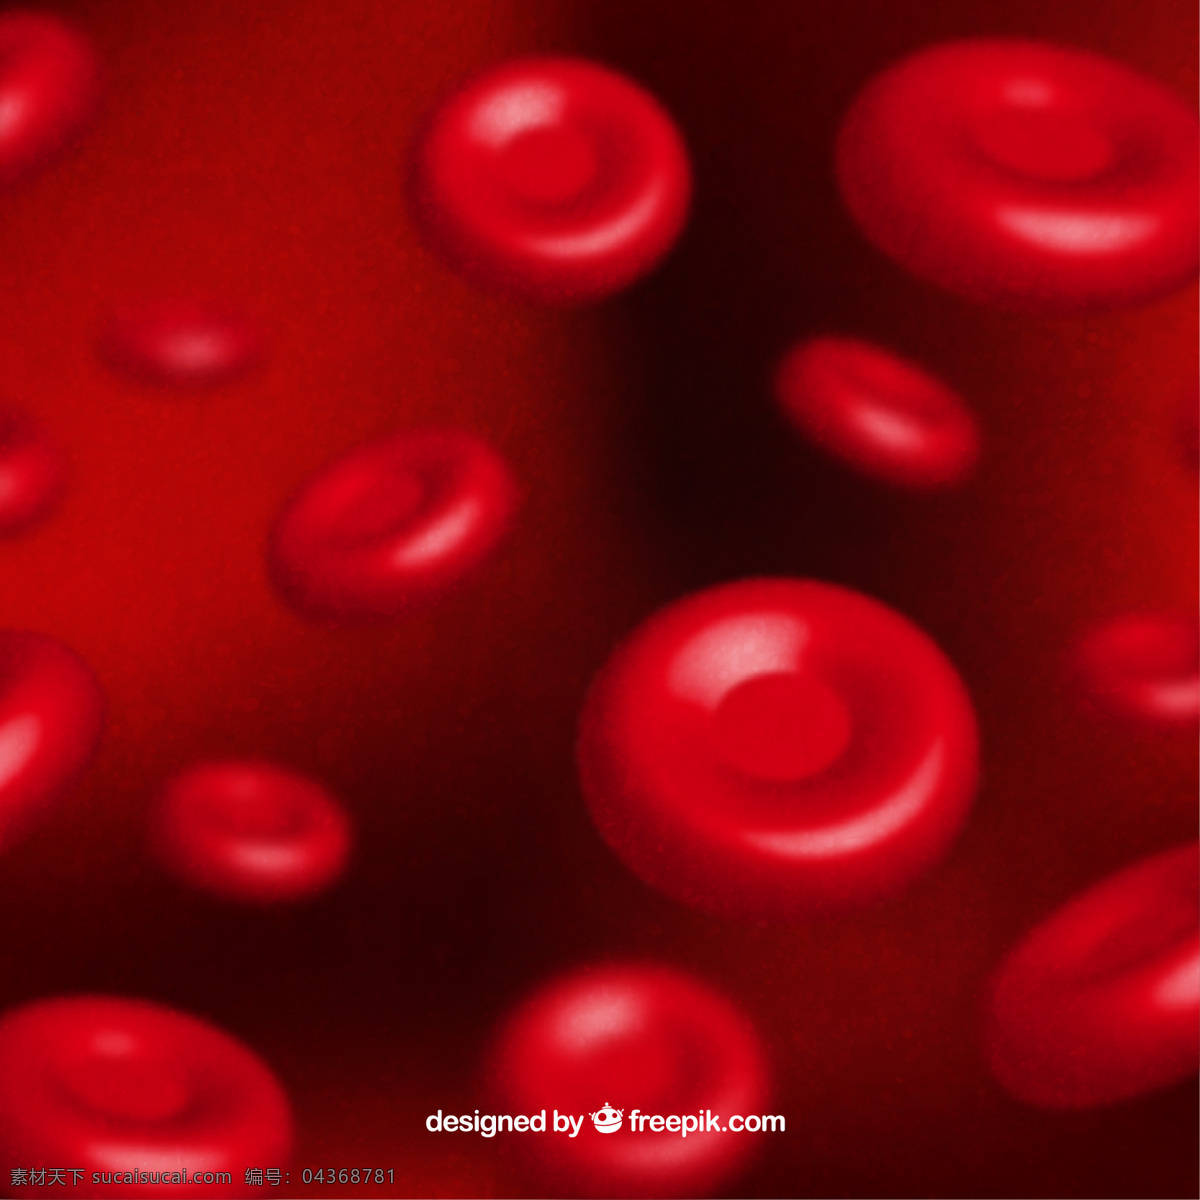 现实 红细胞 背景 抽象背景 抽象 医学 红色 医生 红色背景 形状 健康 医院 血液 护理 医疗 模糊 诊所 细胞 显微镜 抽象形状 卫生保健